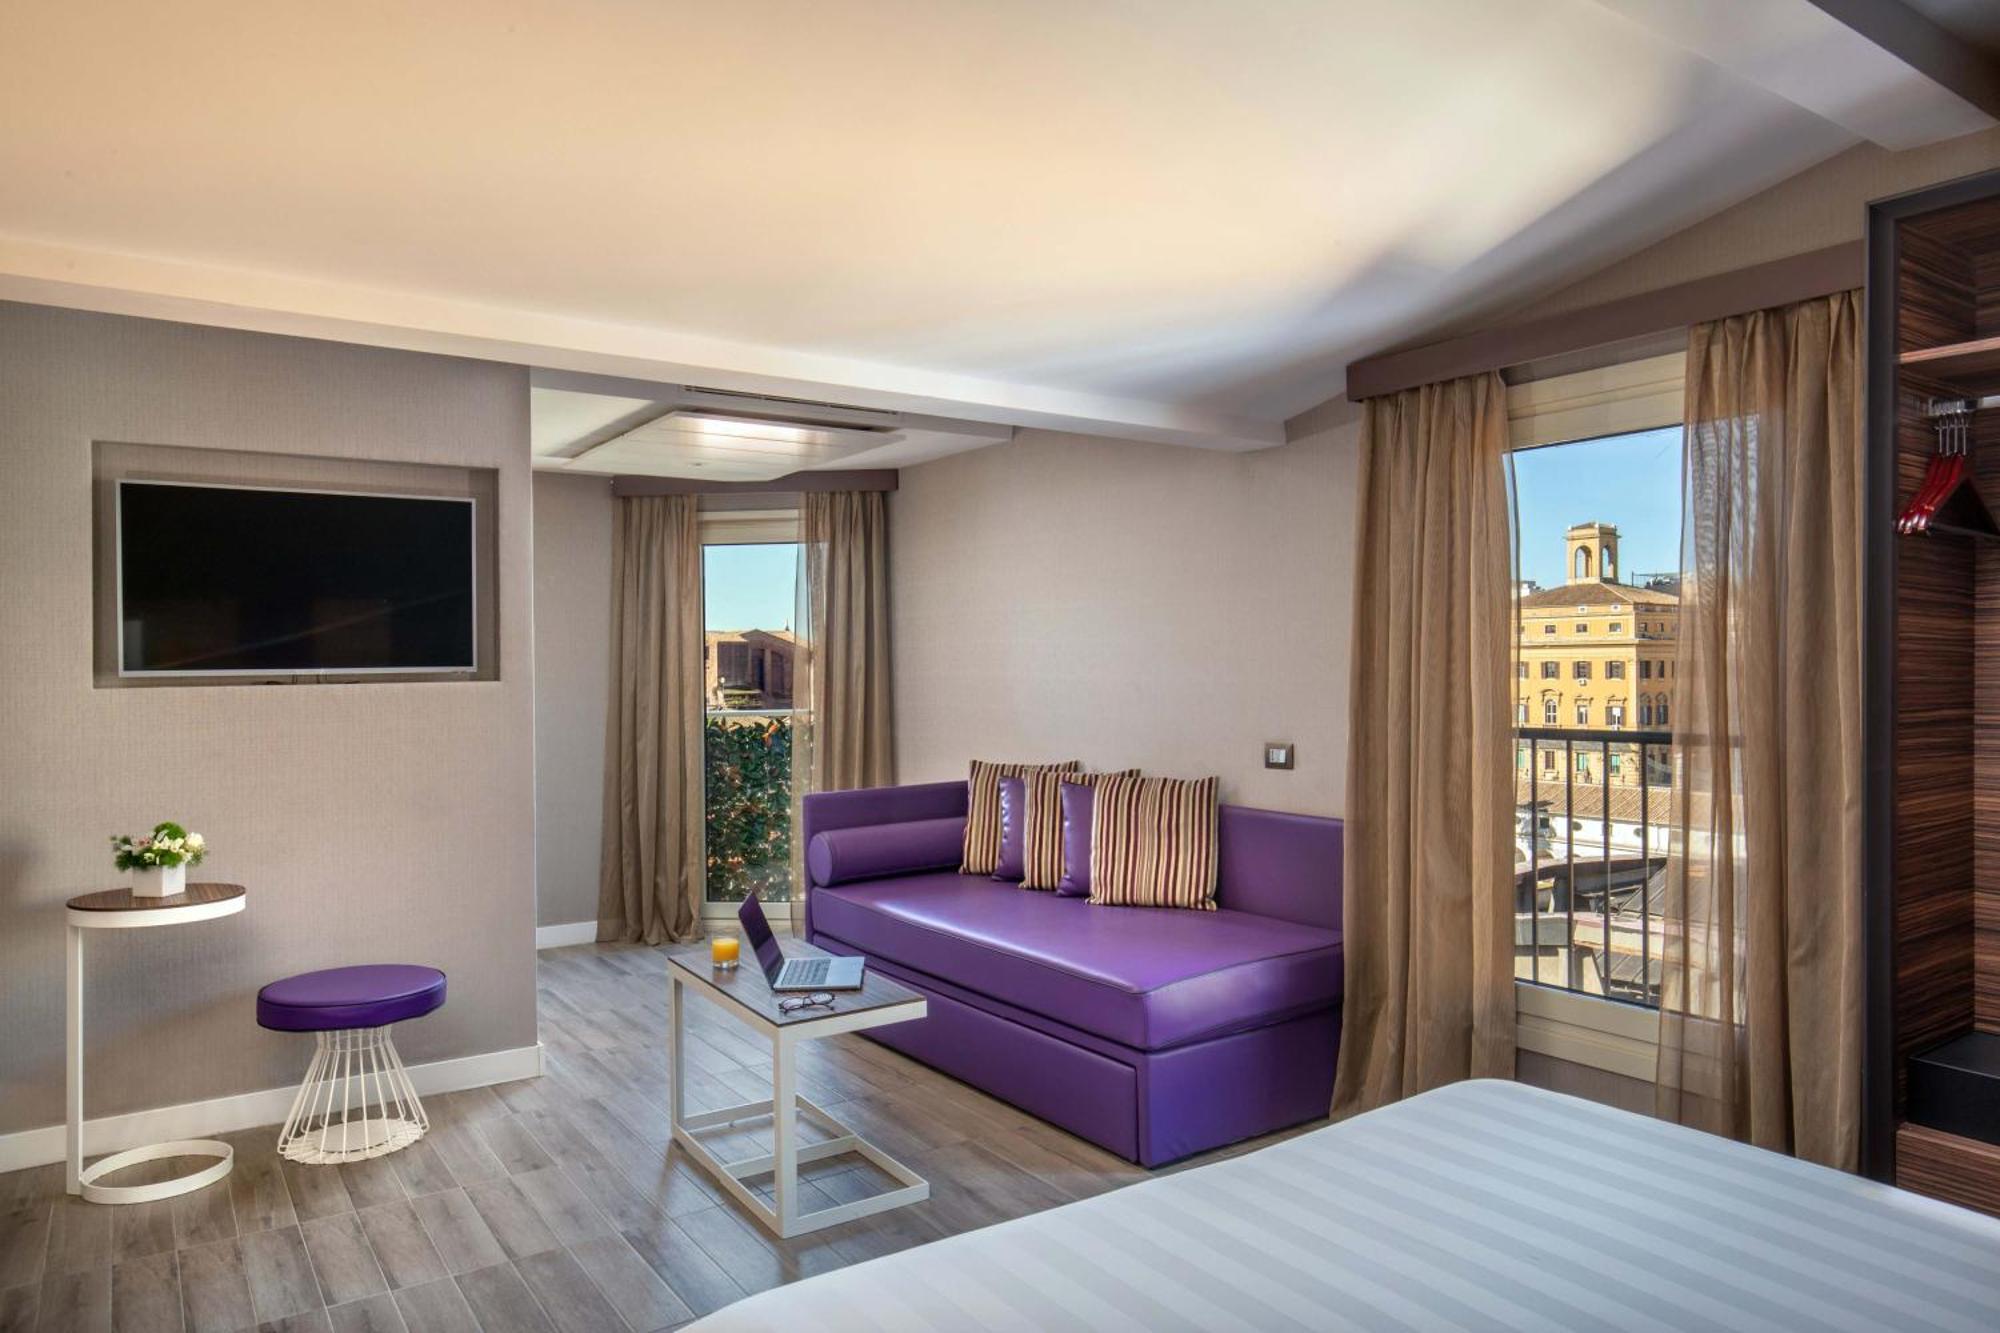 The Republic Ξενοδοχείο Ρώμη Εξωτερικό φωτογραφία